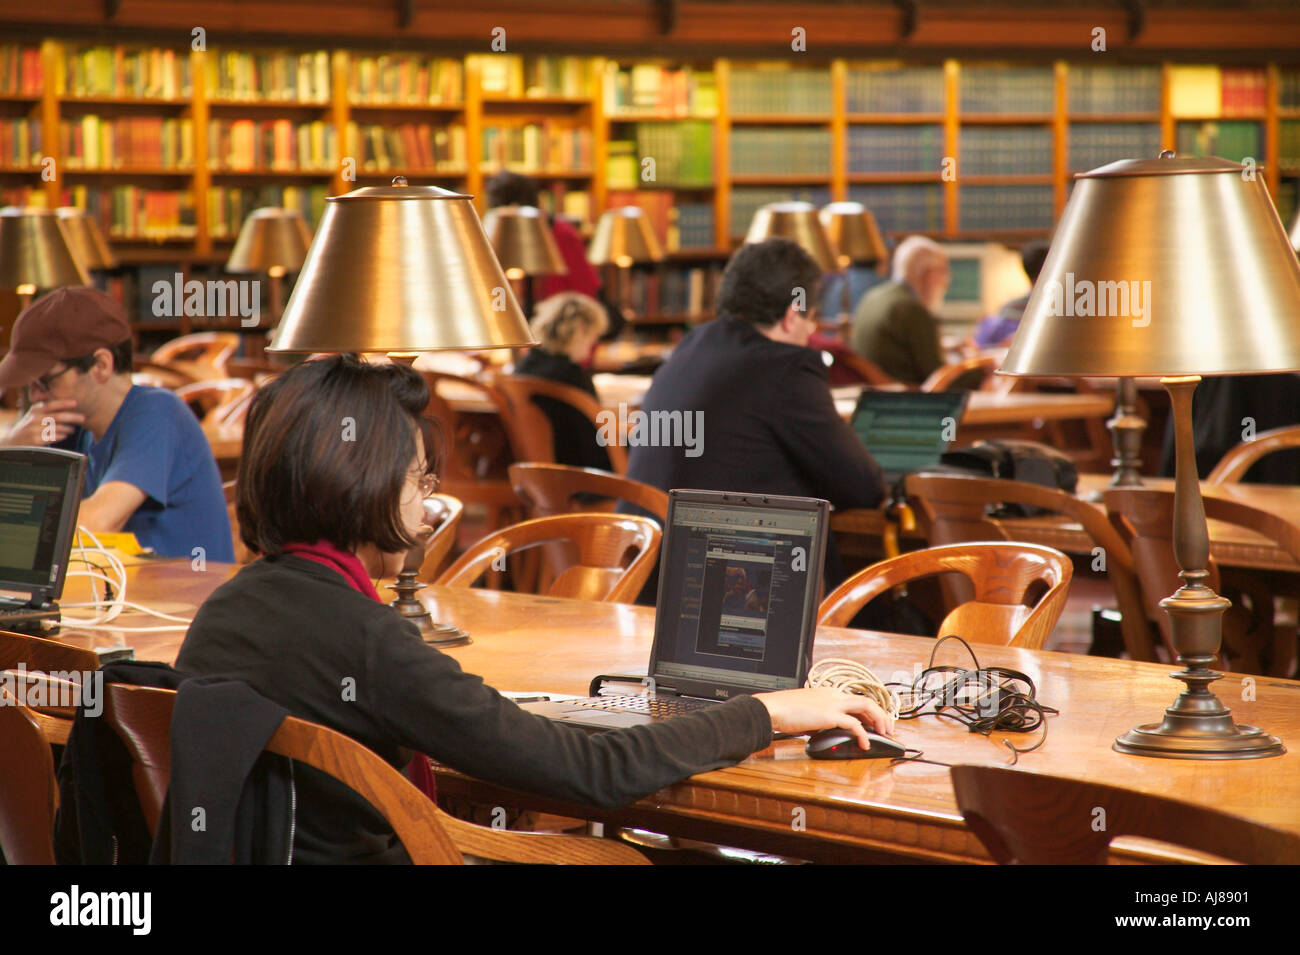 Les gens la lecture et l'étude et l'utilisation des ordinateurs à la Bibliothèque publique de New York à Manhattan, New York NY Banque D'Images